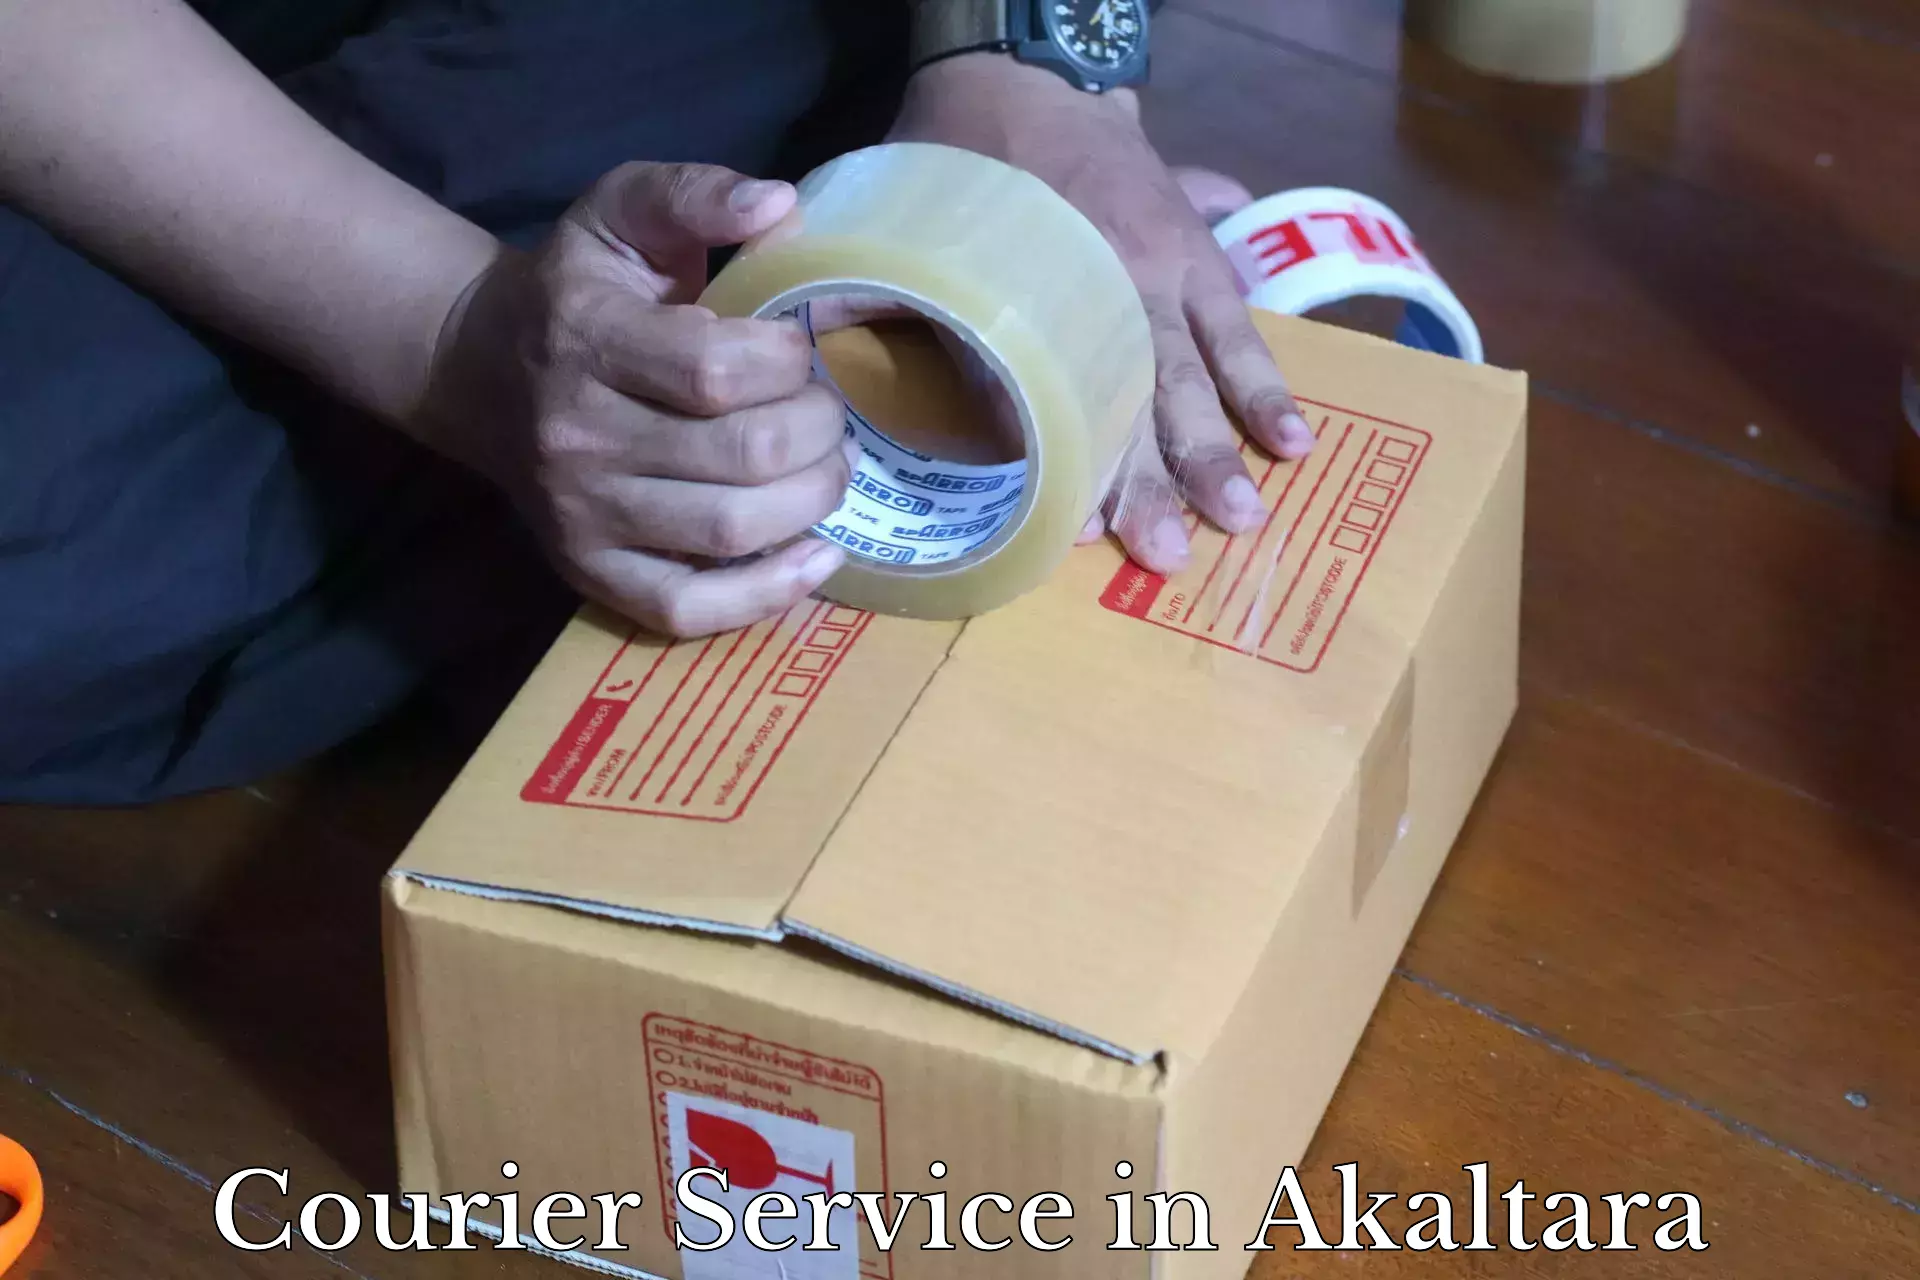 Global logistics network in Akaltara